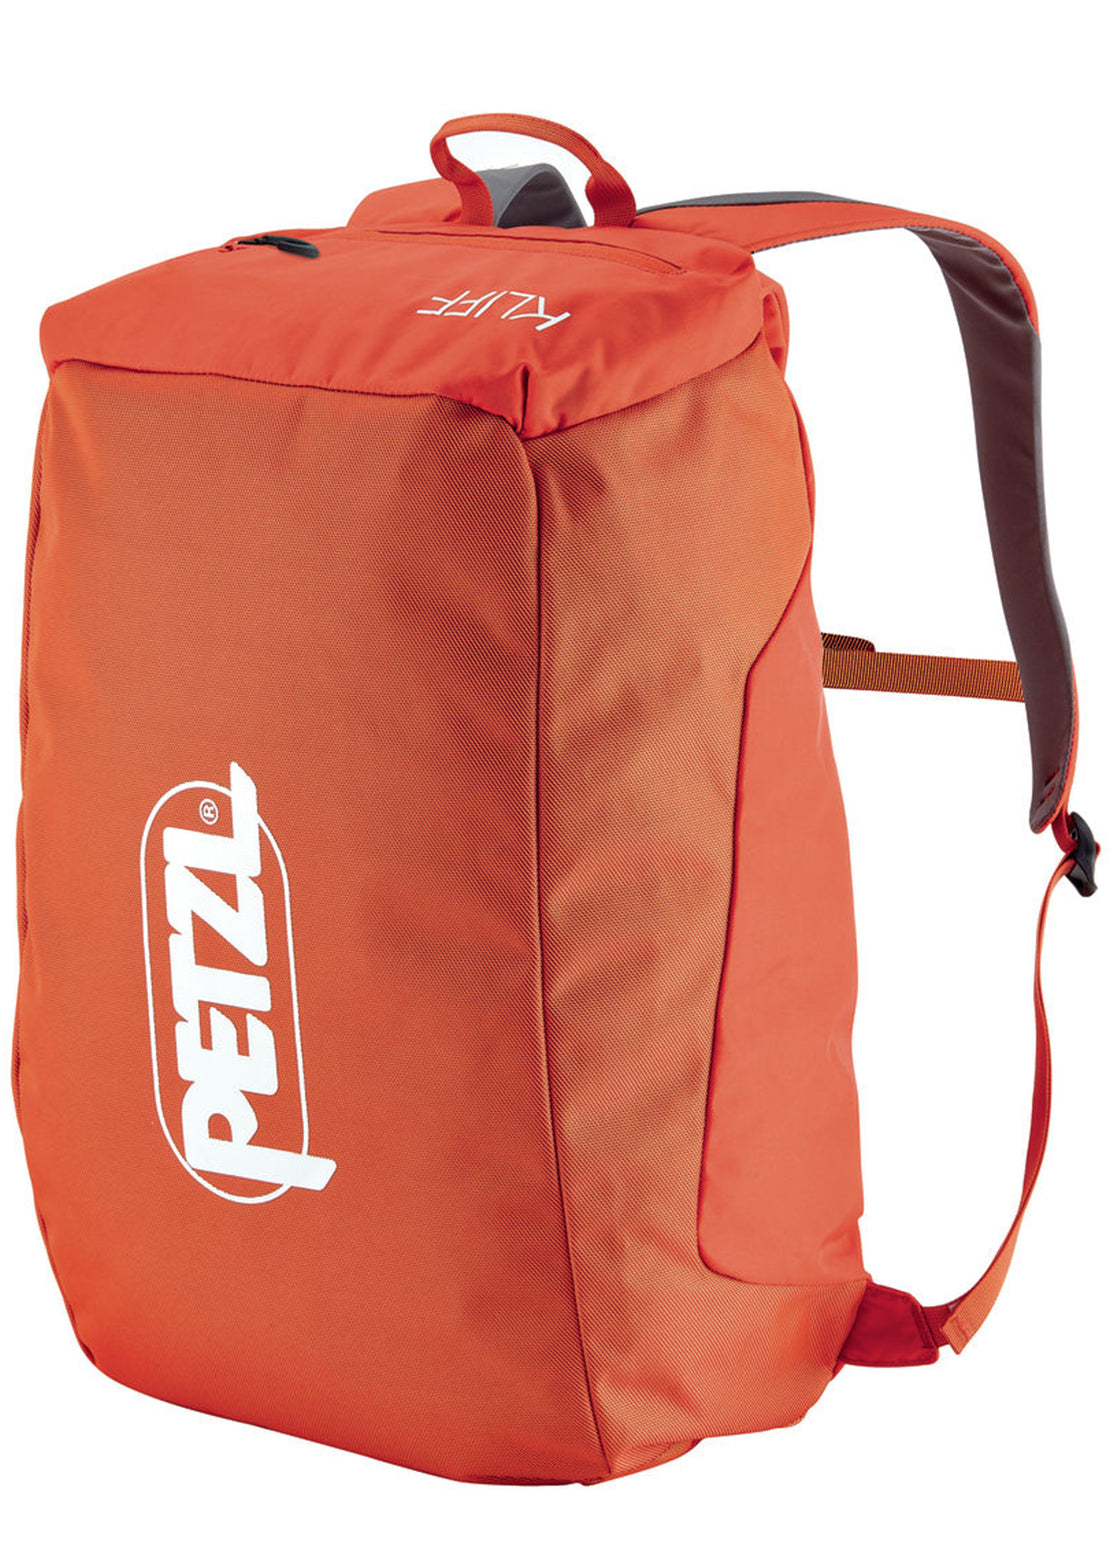 Petzl Kliff Rope Bag Red